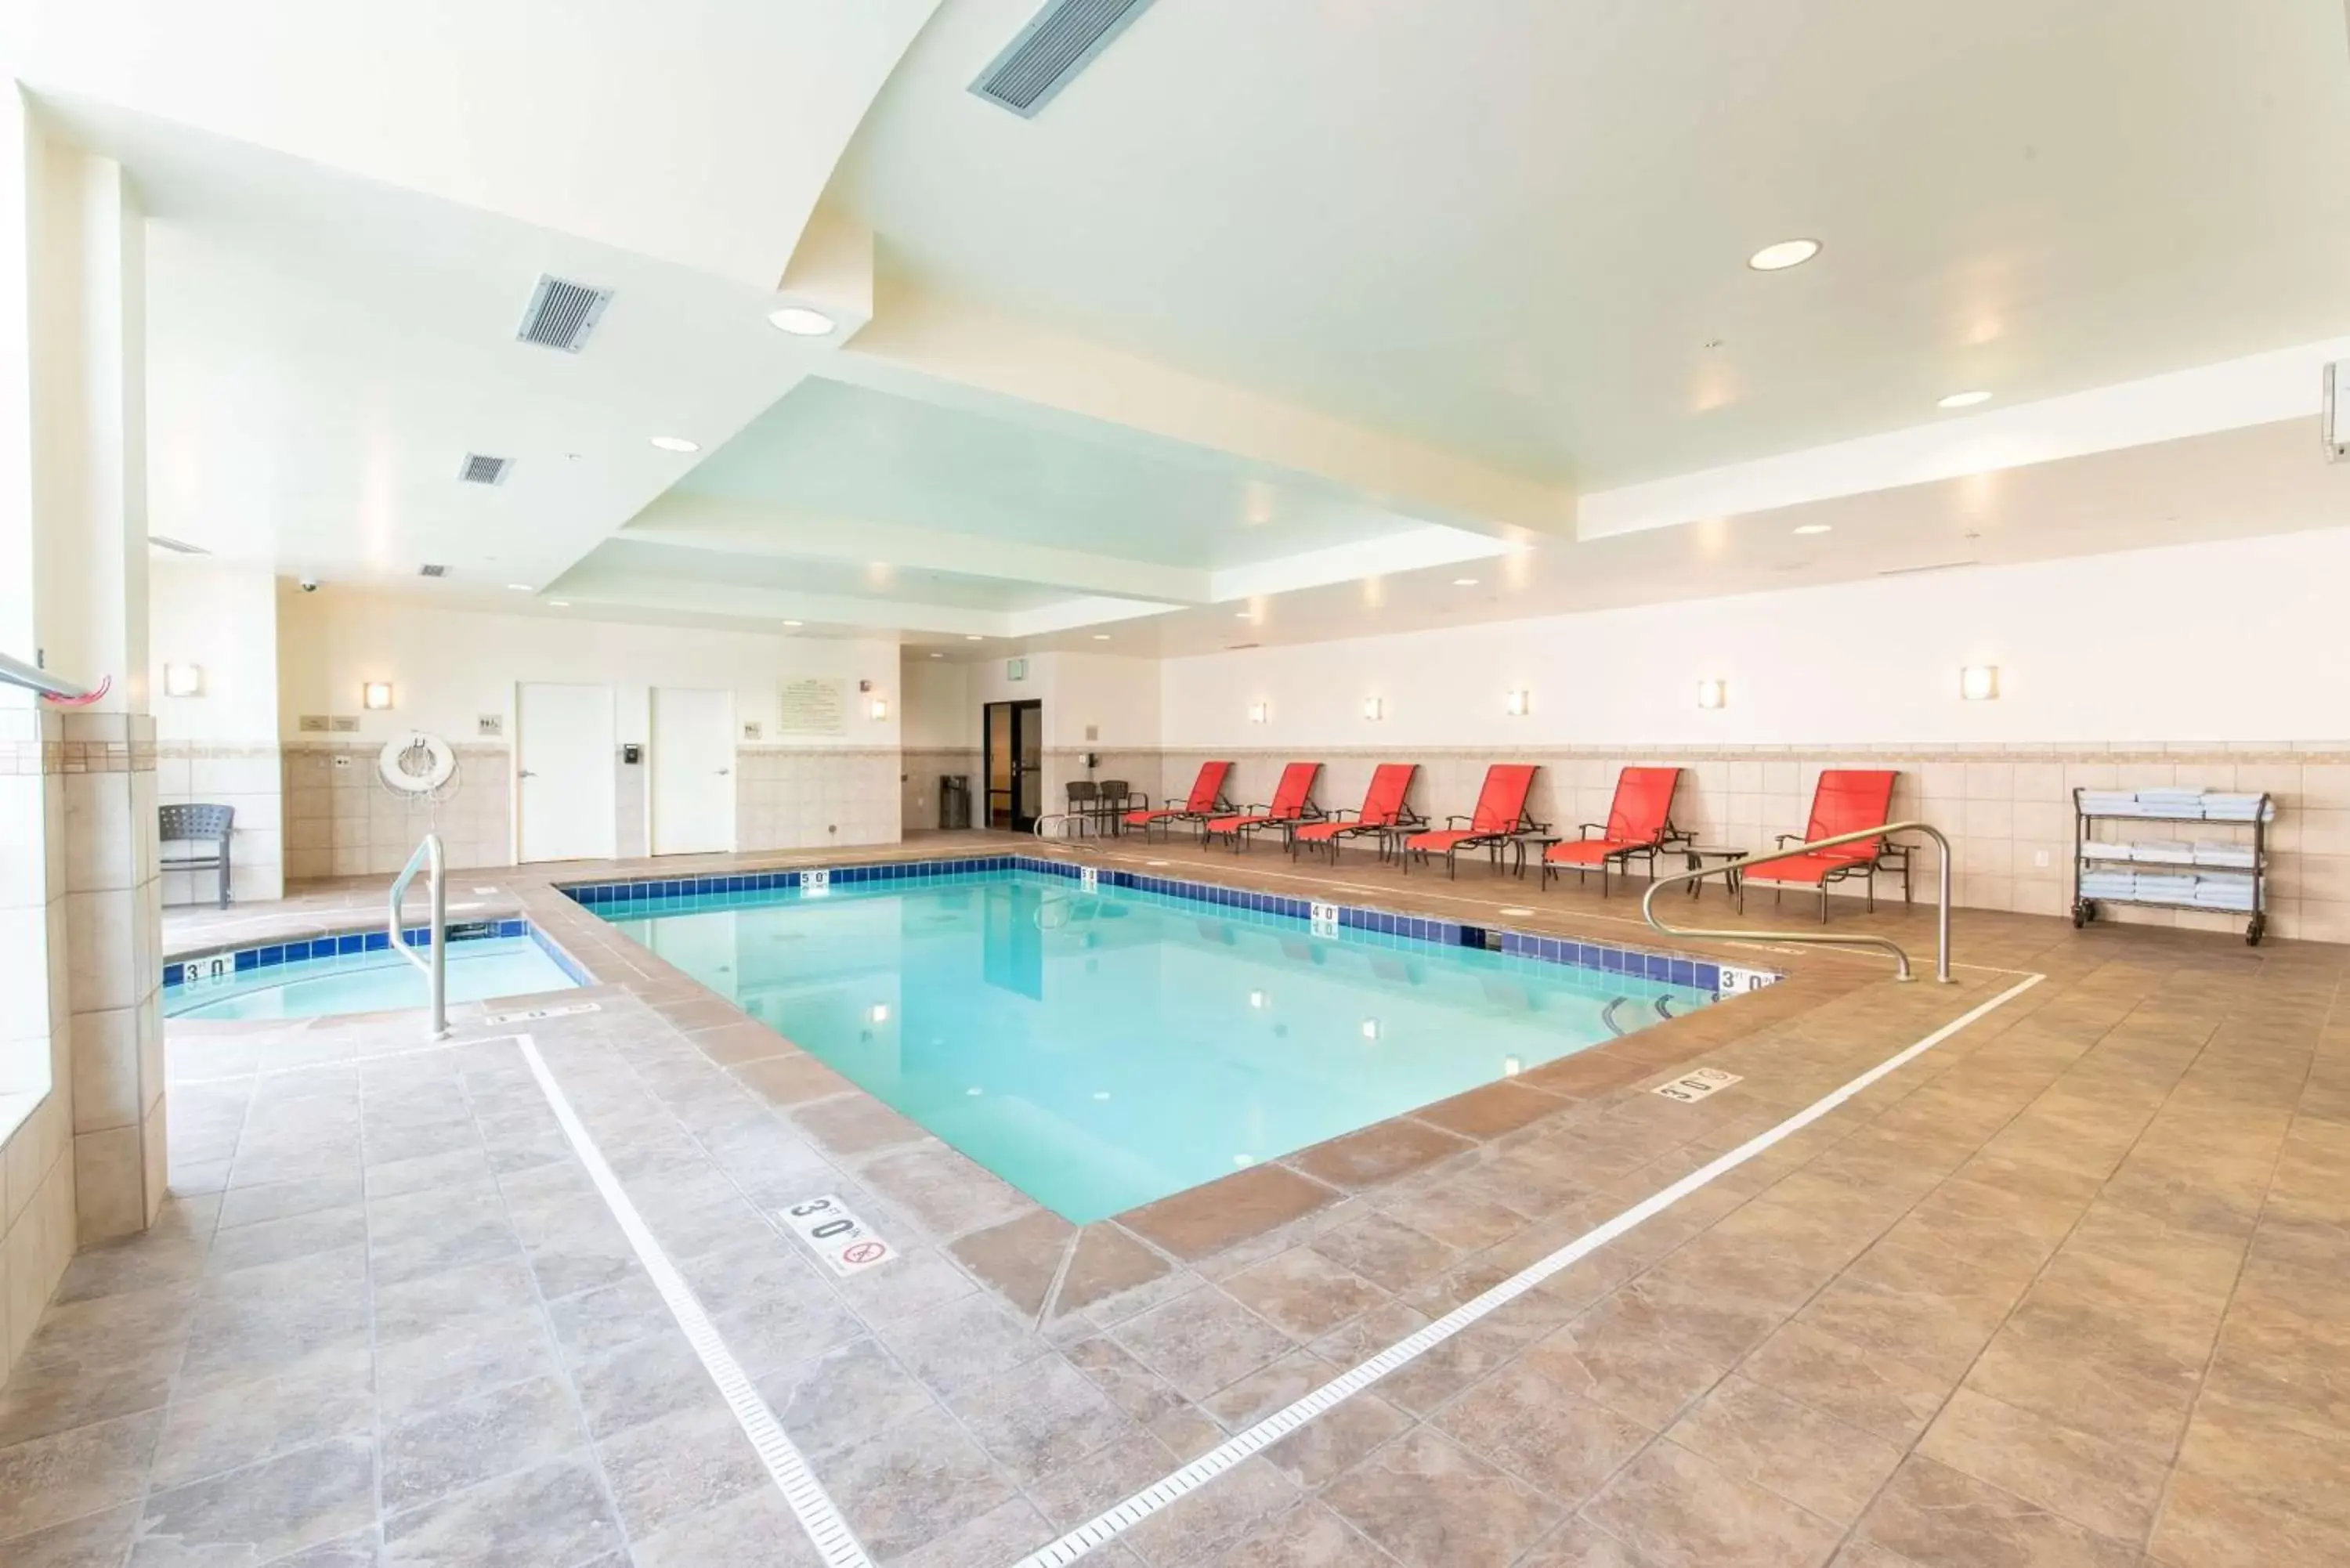 Swimming Pool in Hilton Garden Inn Ogden